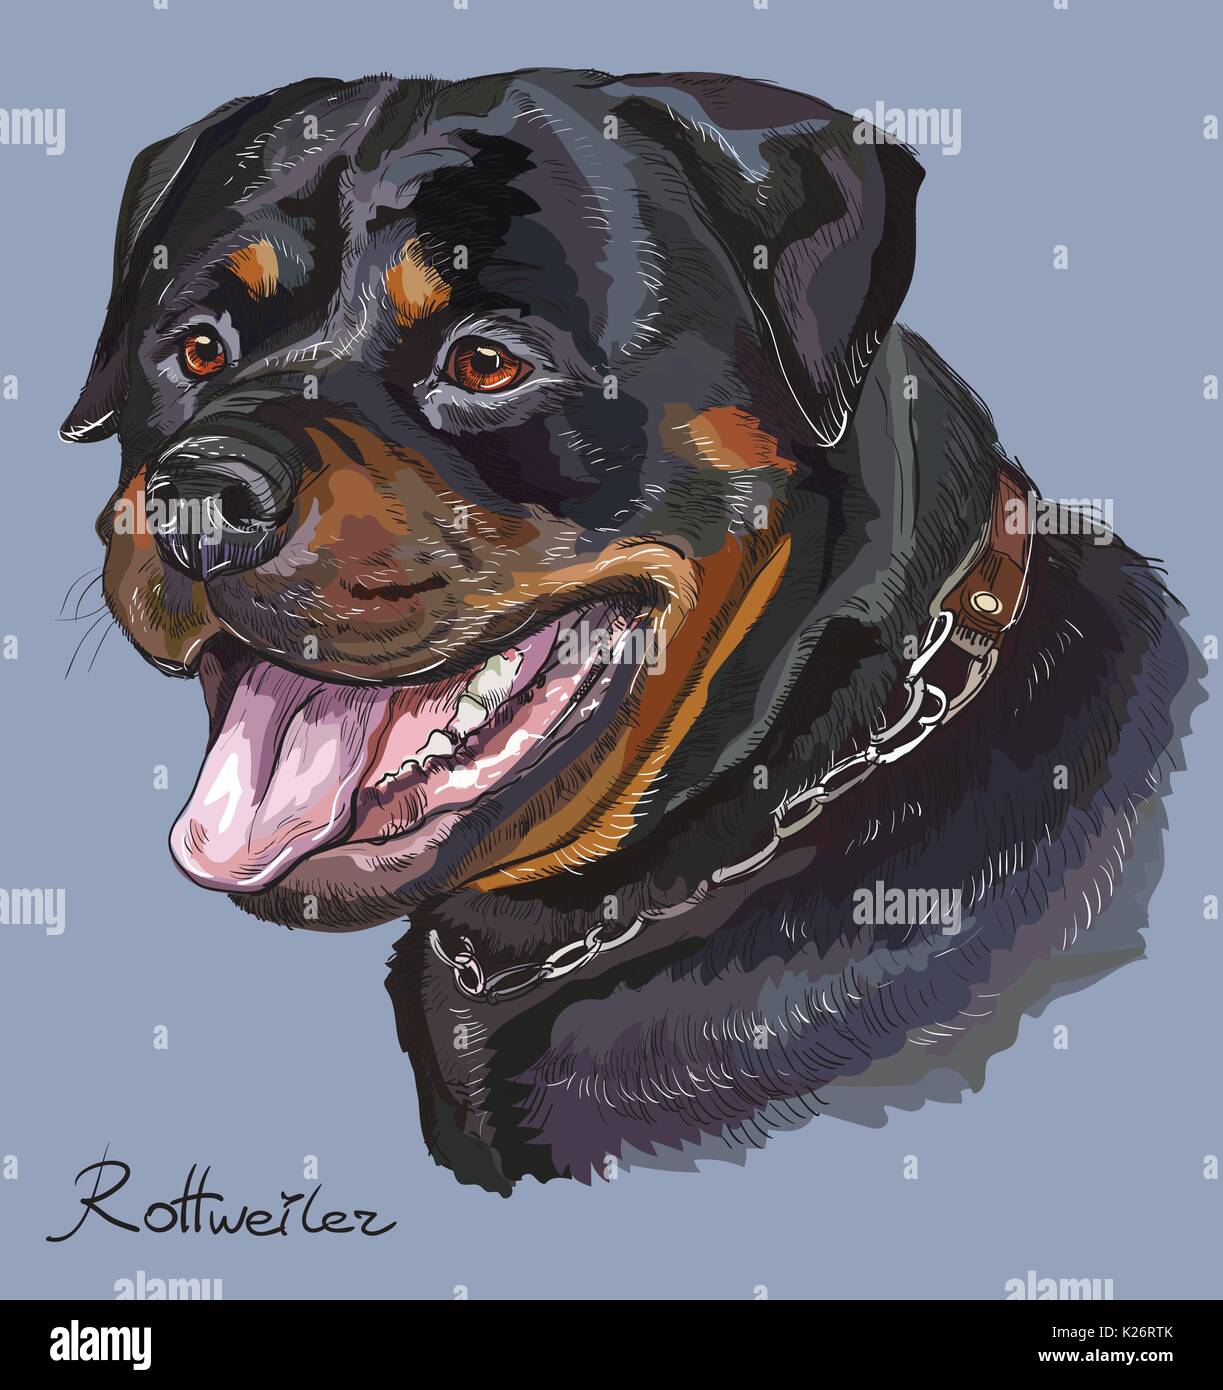 Rottweiler vettore di disegno a mano illustrazione in diversi colori su sfondo blu Illustrazione Vettoriale